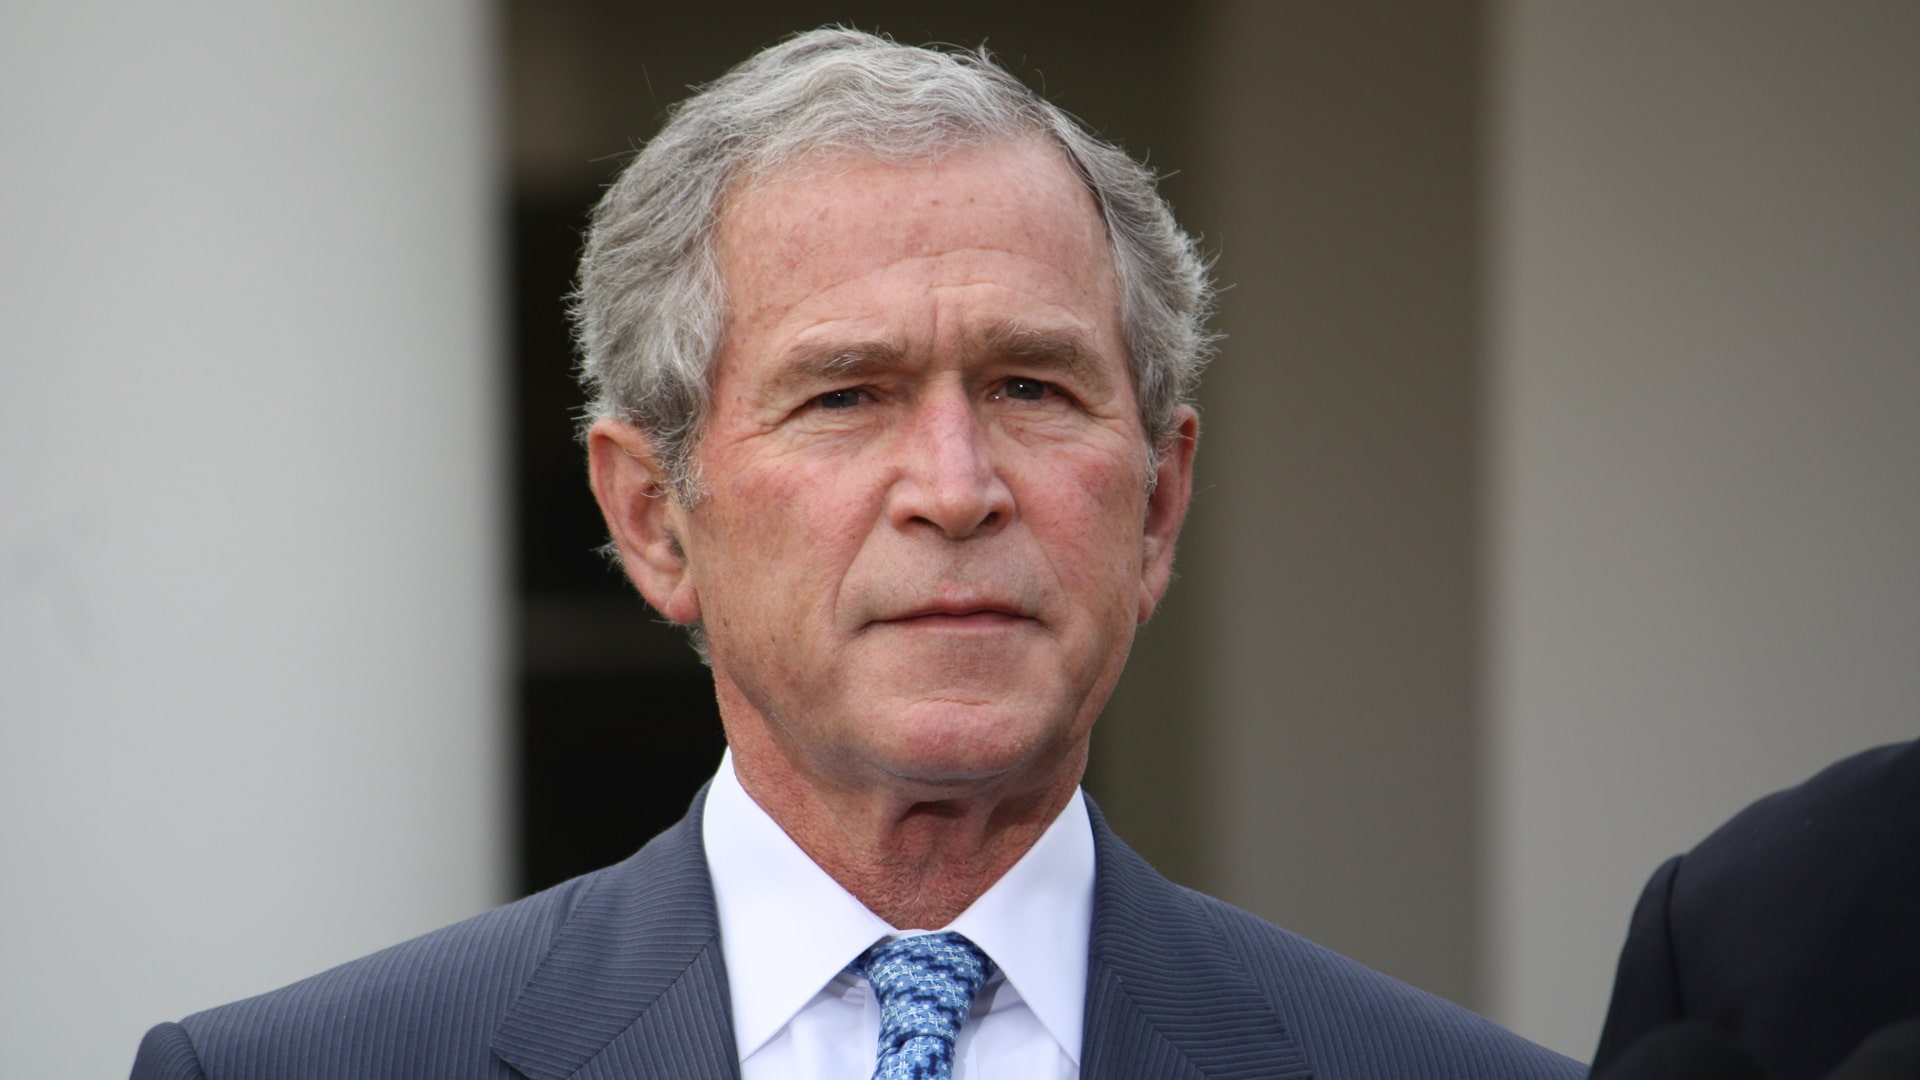 George-W-Bush-Net-Worth.jpg